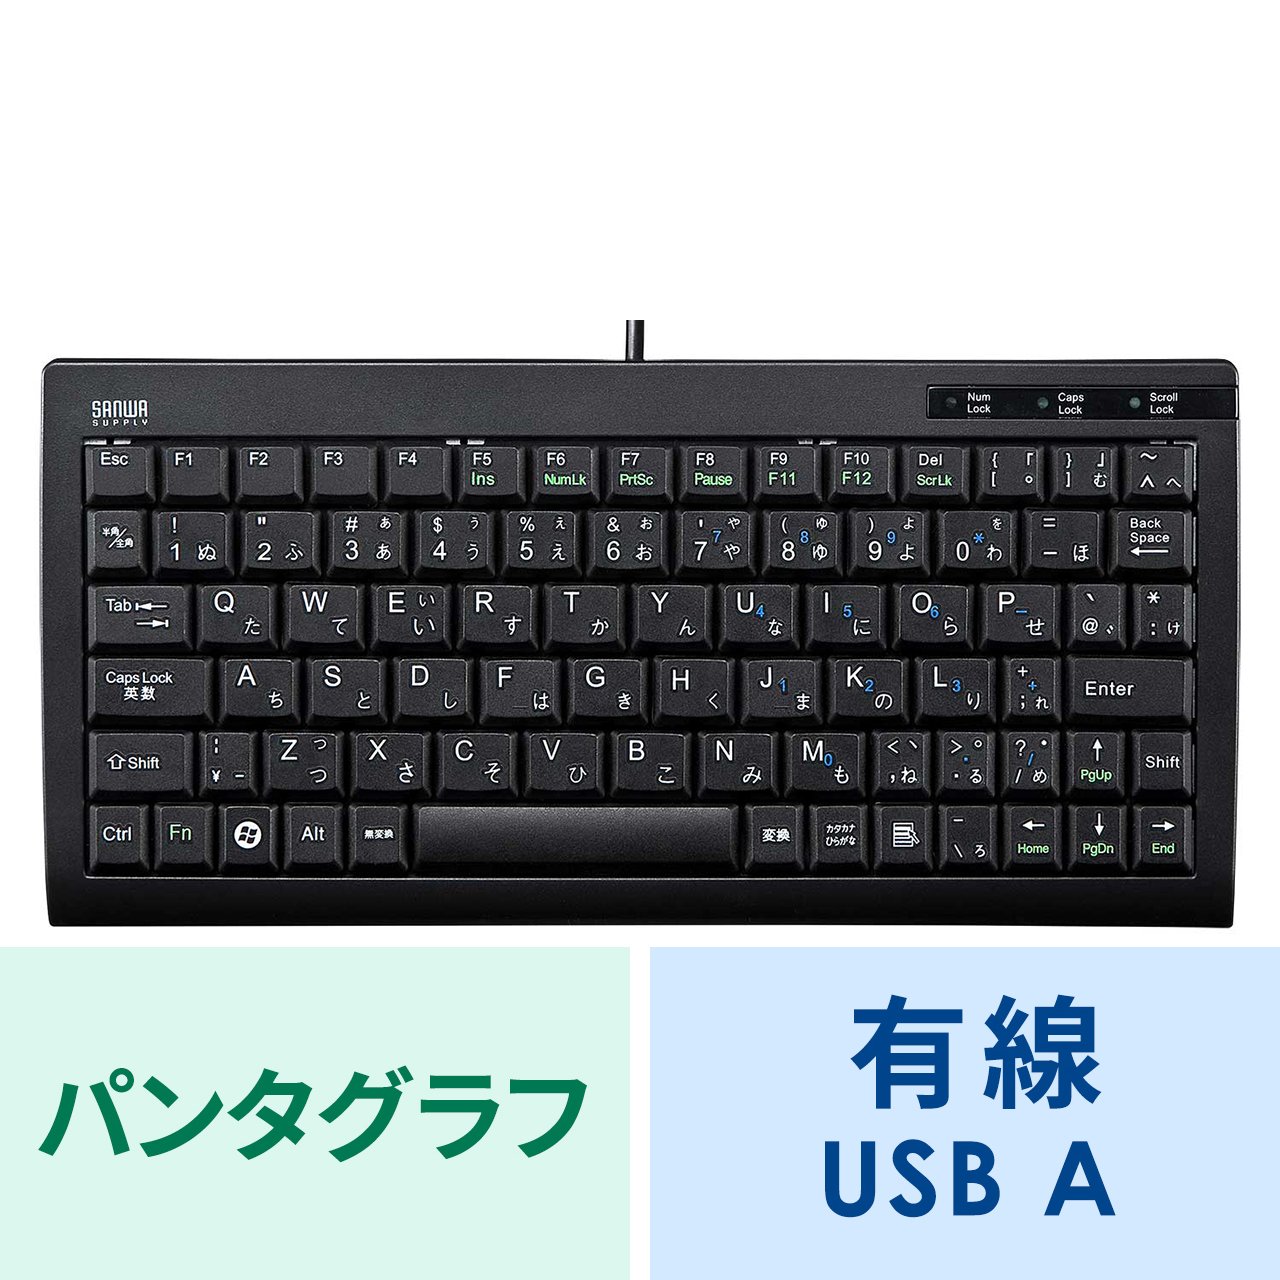 【色: ブラック】サンワサプライ 有線コンパクトキーボード テンキーなし USB